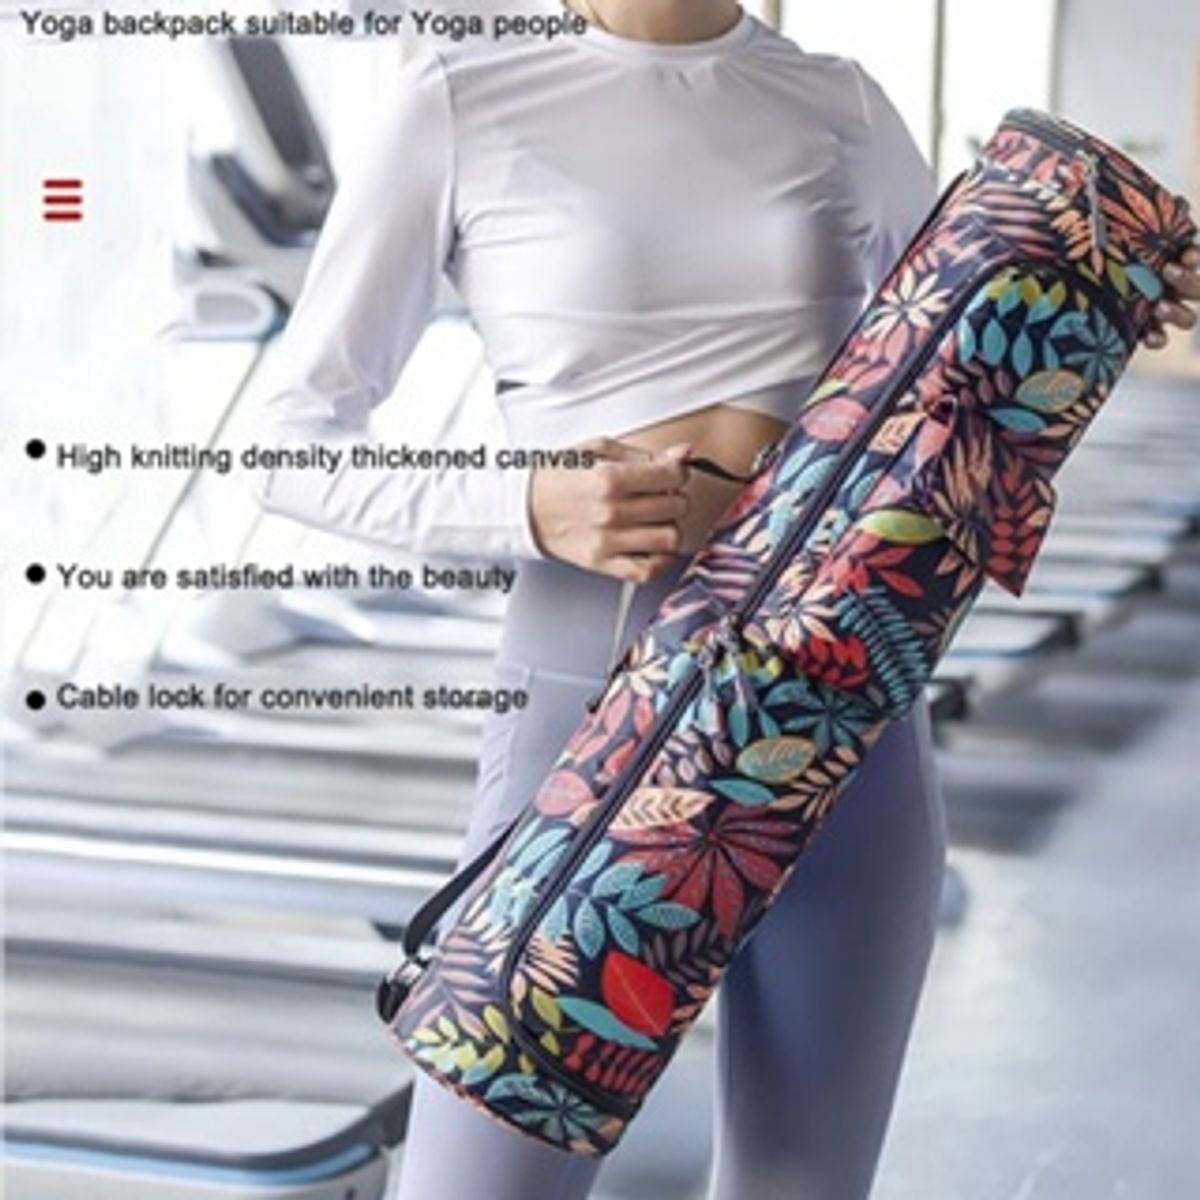 10 Best Yoga Mat Backpacks for the On-the-Go Yogi